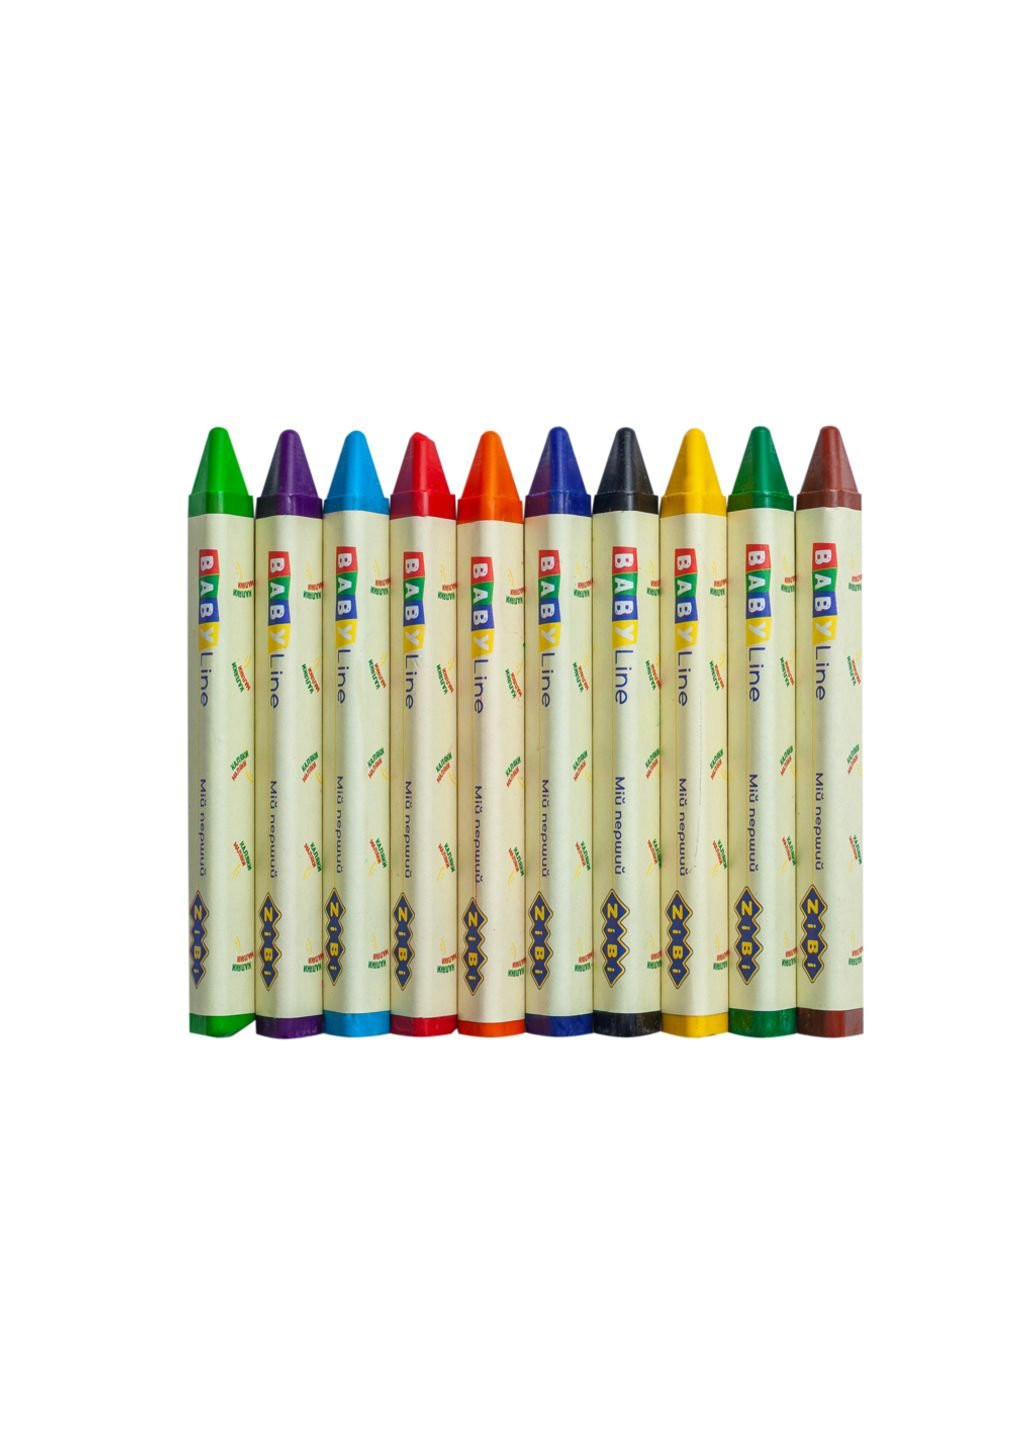 Олівці кольорові Baby line Jumbo трикутні 10 шт (ZB.2482) Zibi (254066161)